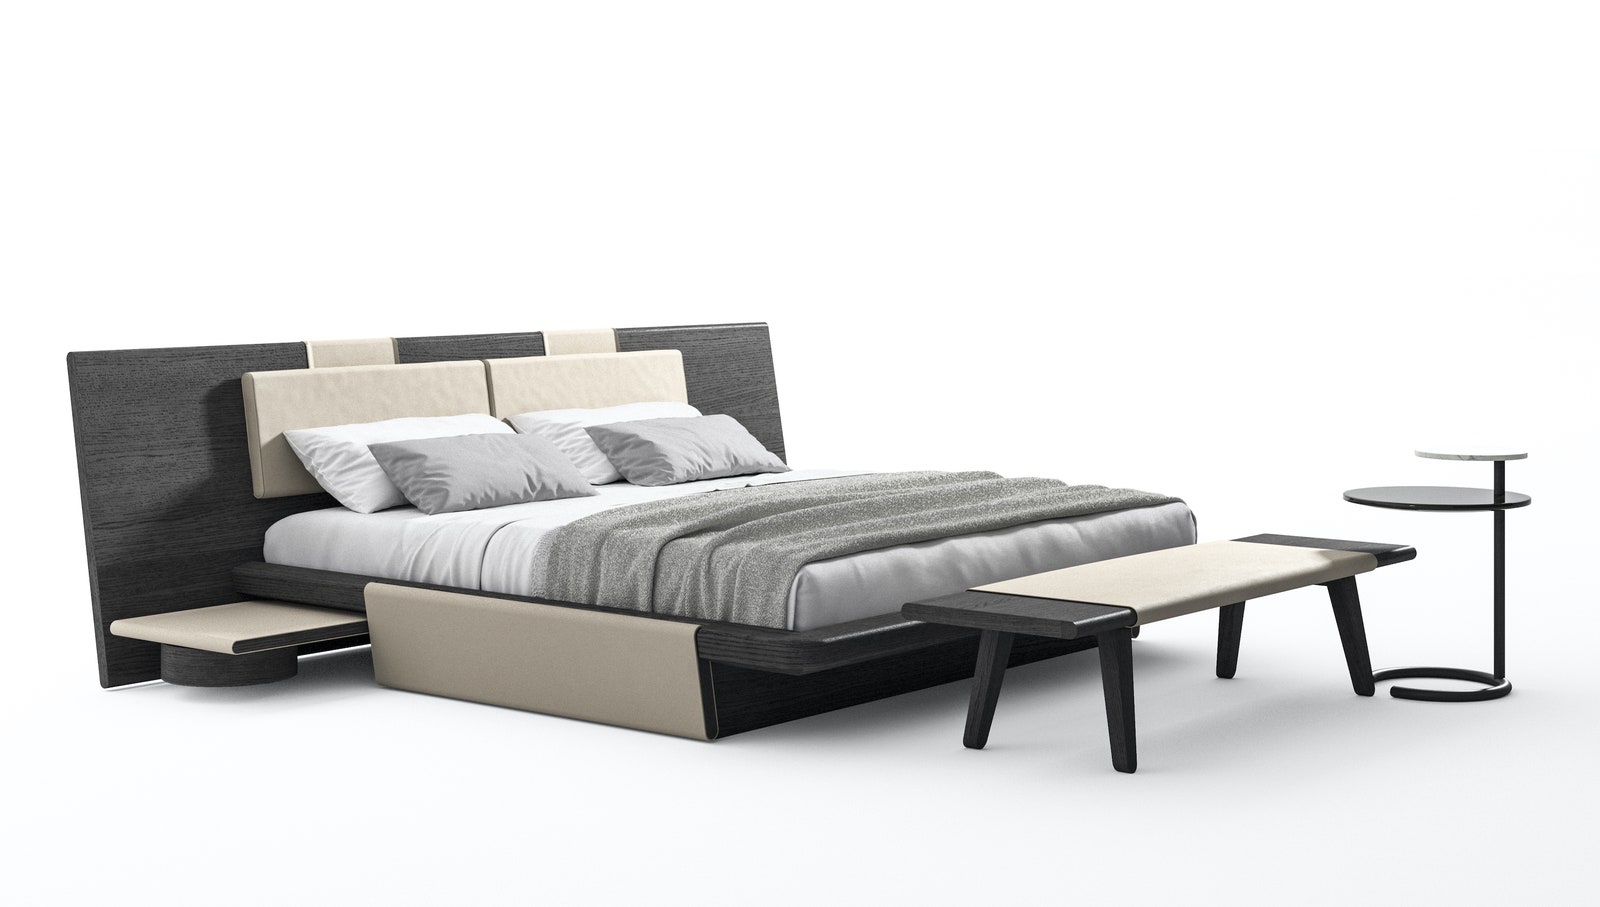 Кровать по дизайну Родольфо Дордони.